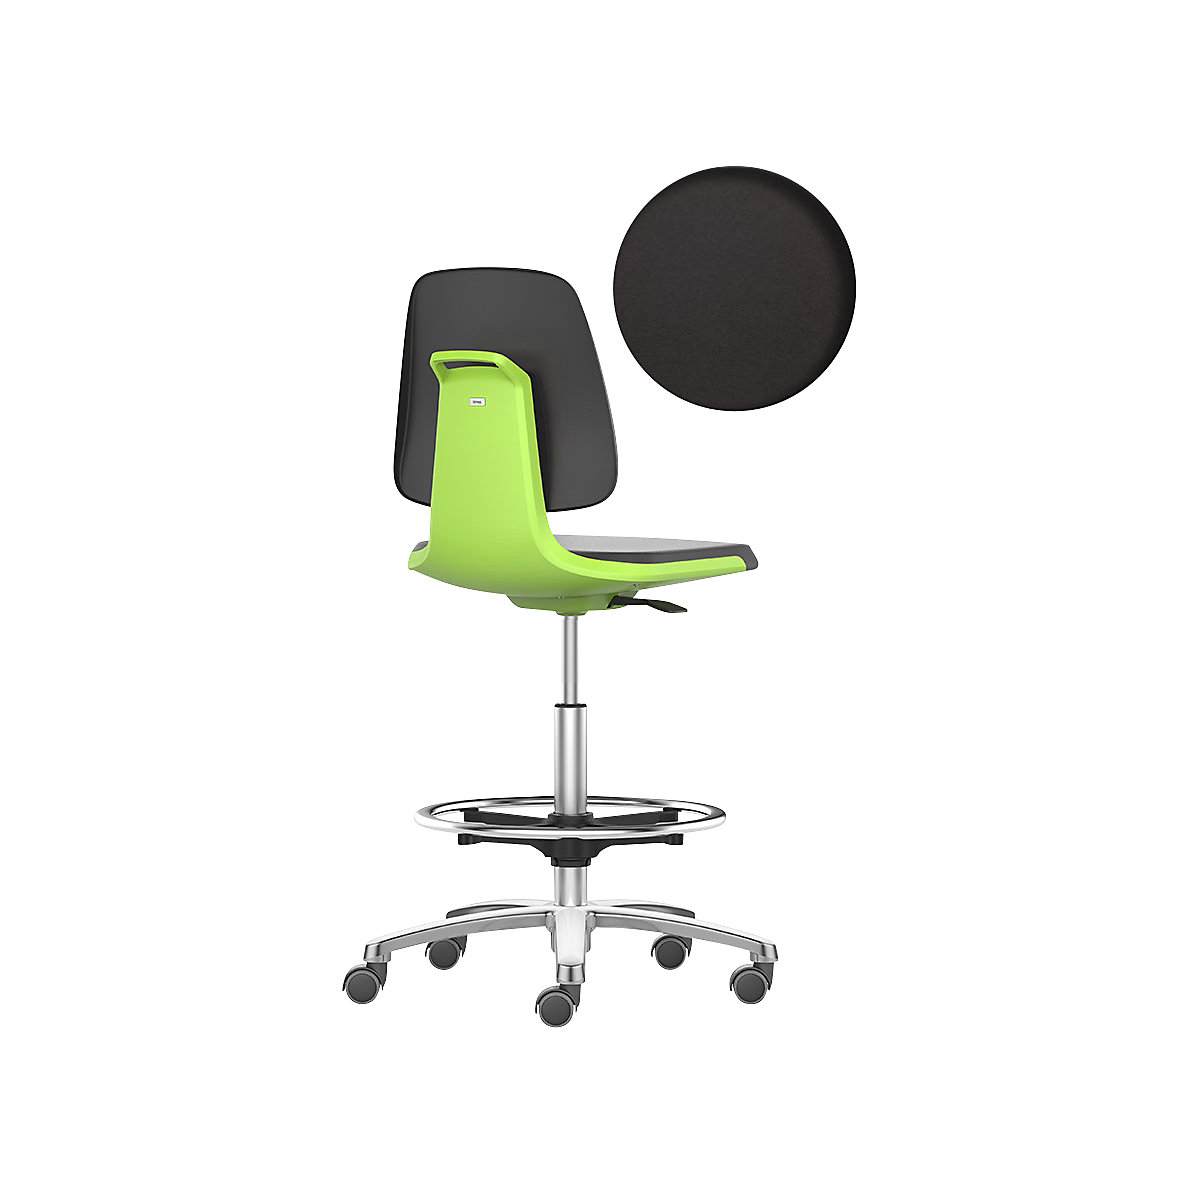 Arbeitsdrehstuhl LABSIT bimos, Hochstuhl mit Sitz-Stopp-Rollen und Fußring, Sitz aus PU-Schaum, grün-28